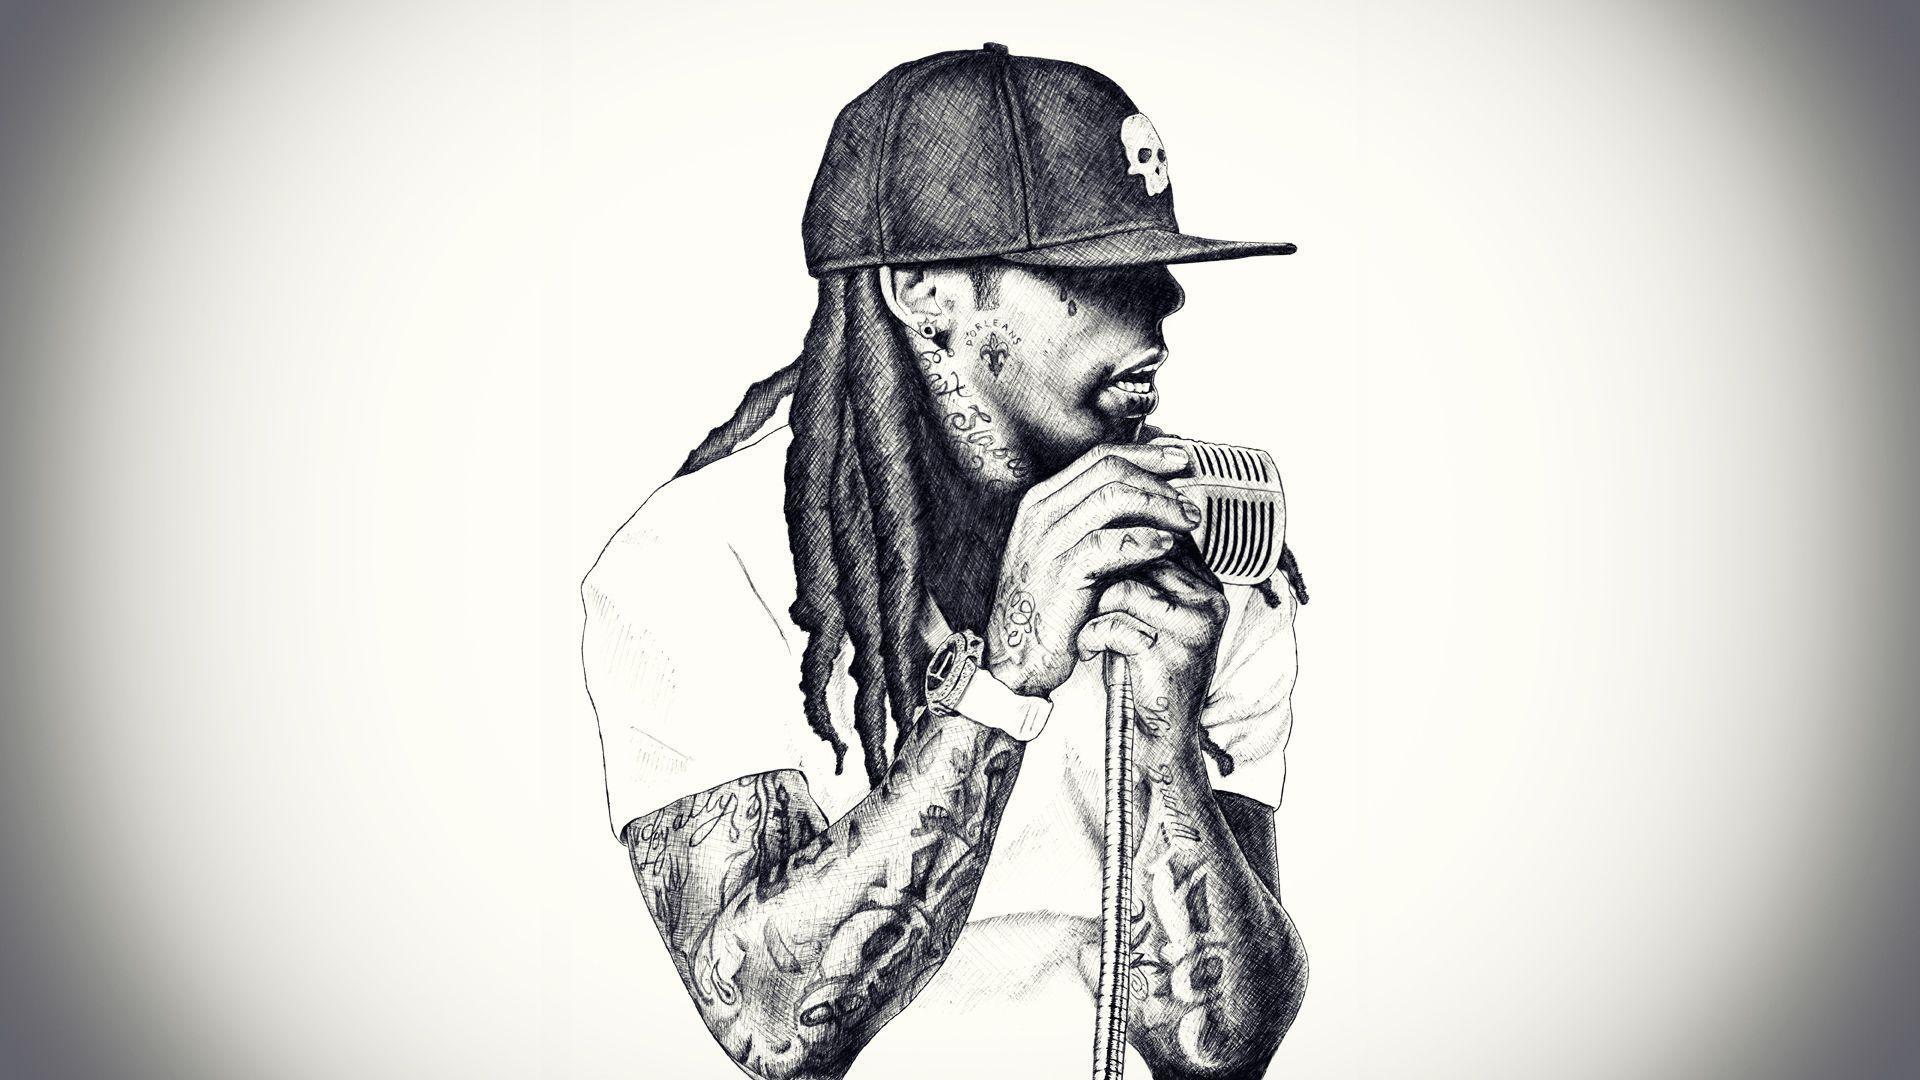 Lil Wayne Rap Singer Wallpaper 1920x1080 px Free Download